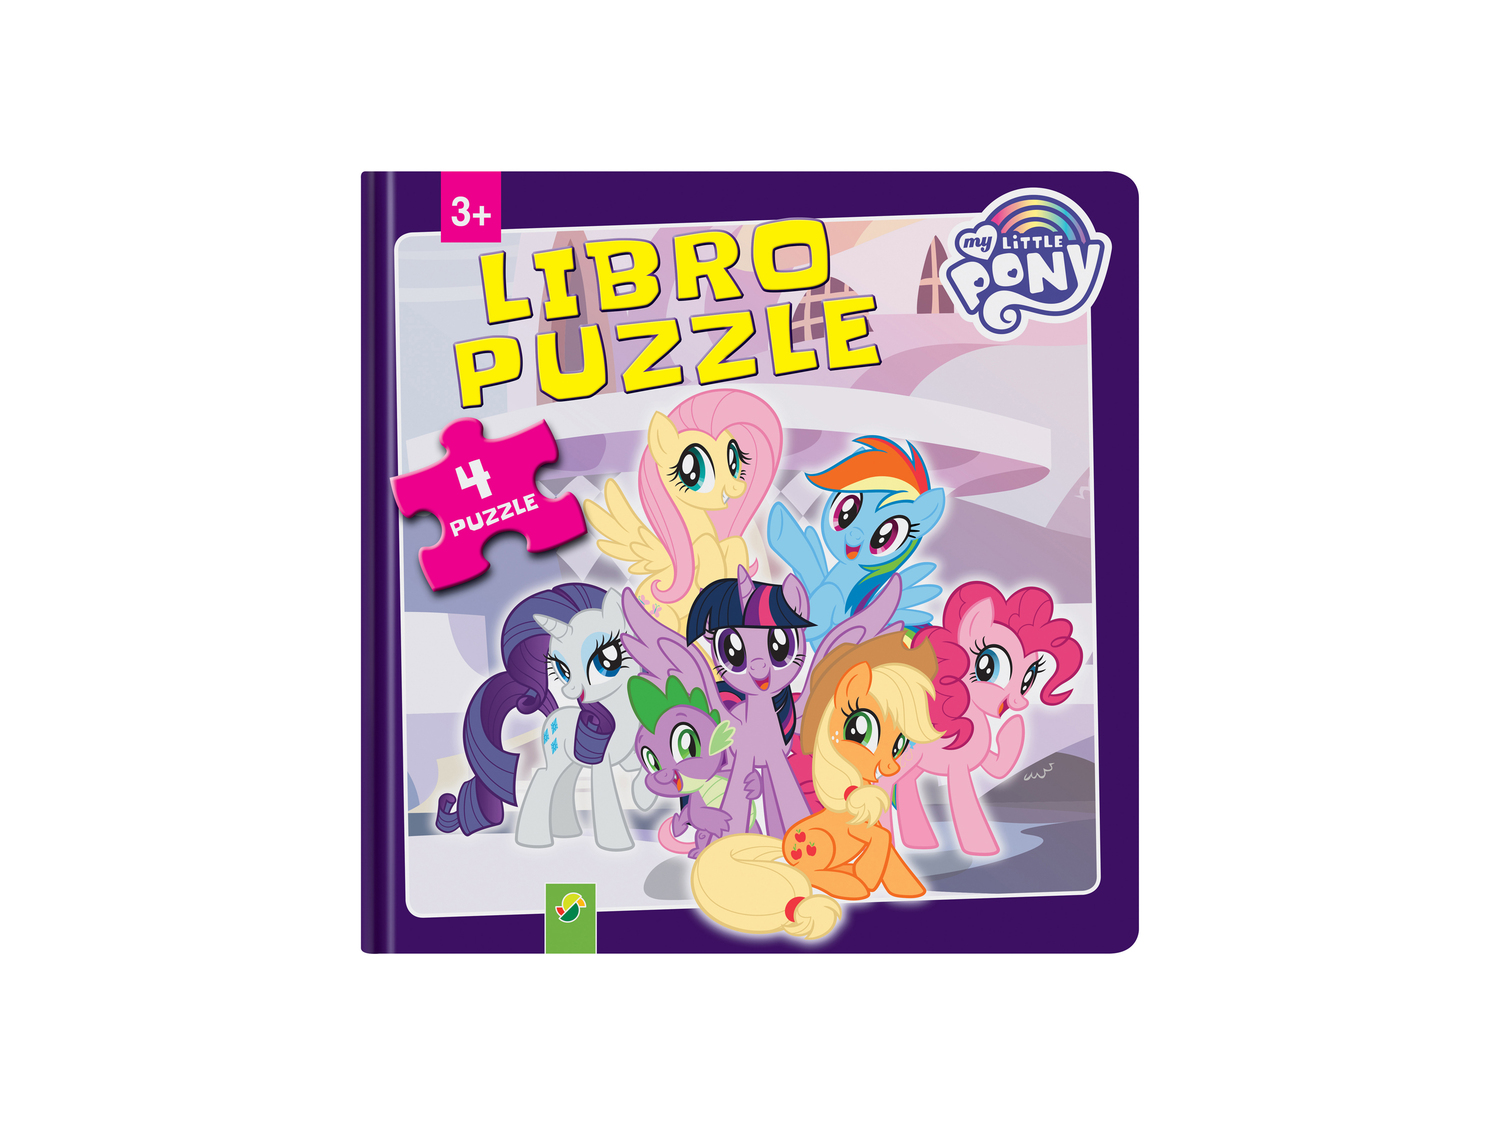 Libro puzzle per bambini Paw Patrol, PJ Masks, My Little Pony, SAM Fsc, prezzo 5.99 ...